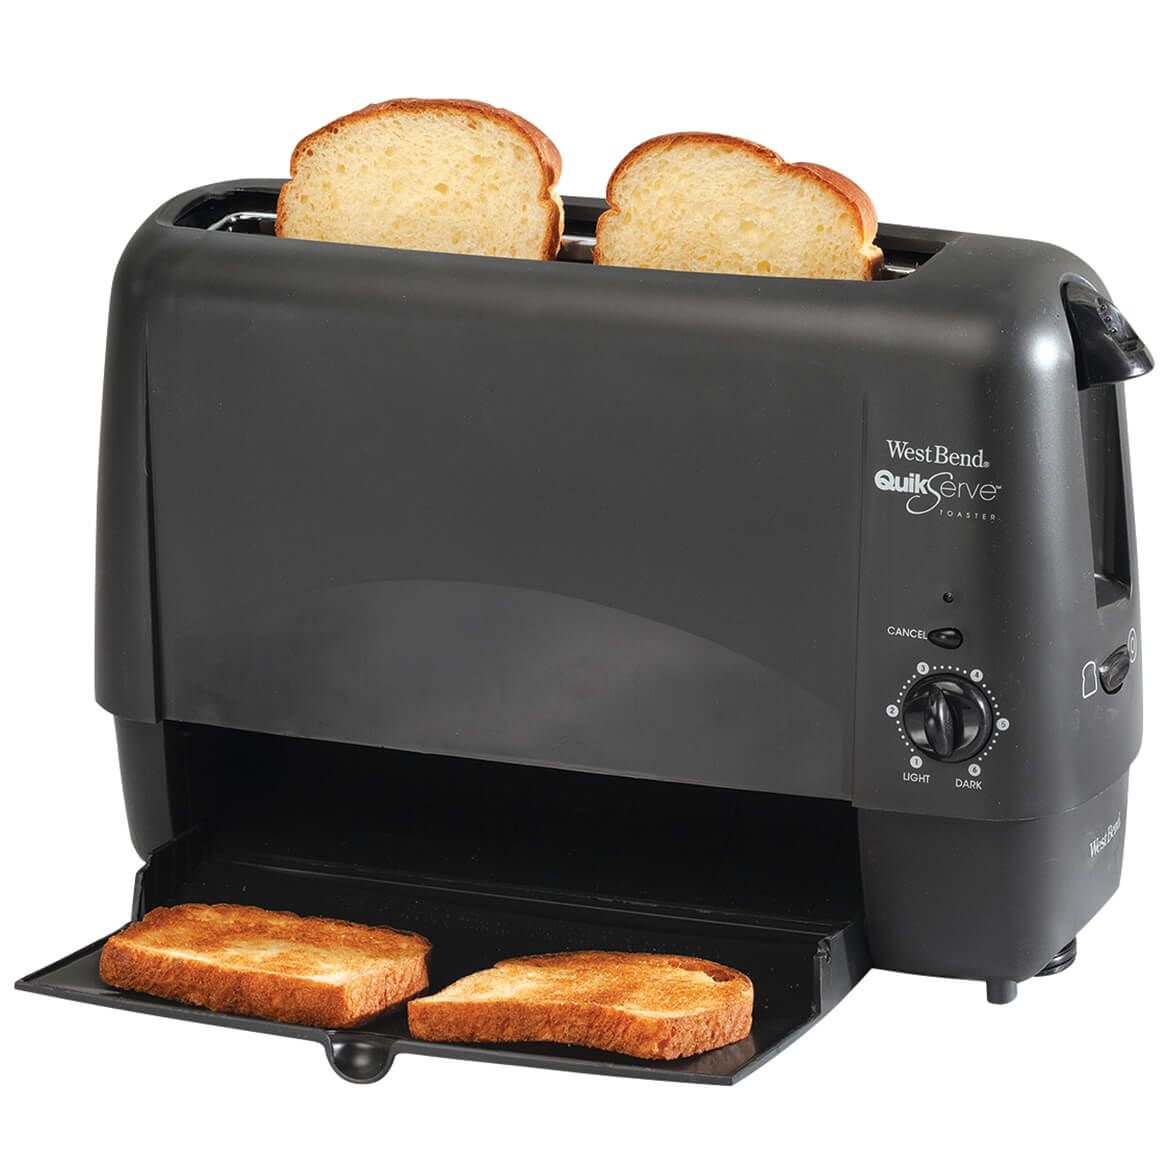 West Bend Quik Serve Toaster + '-' + 364659